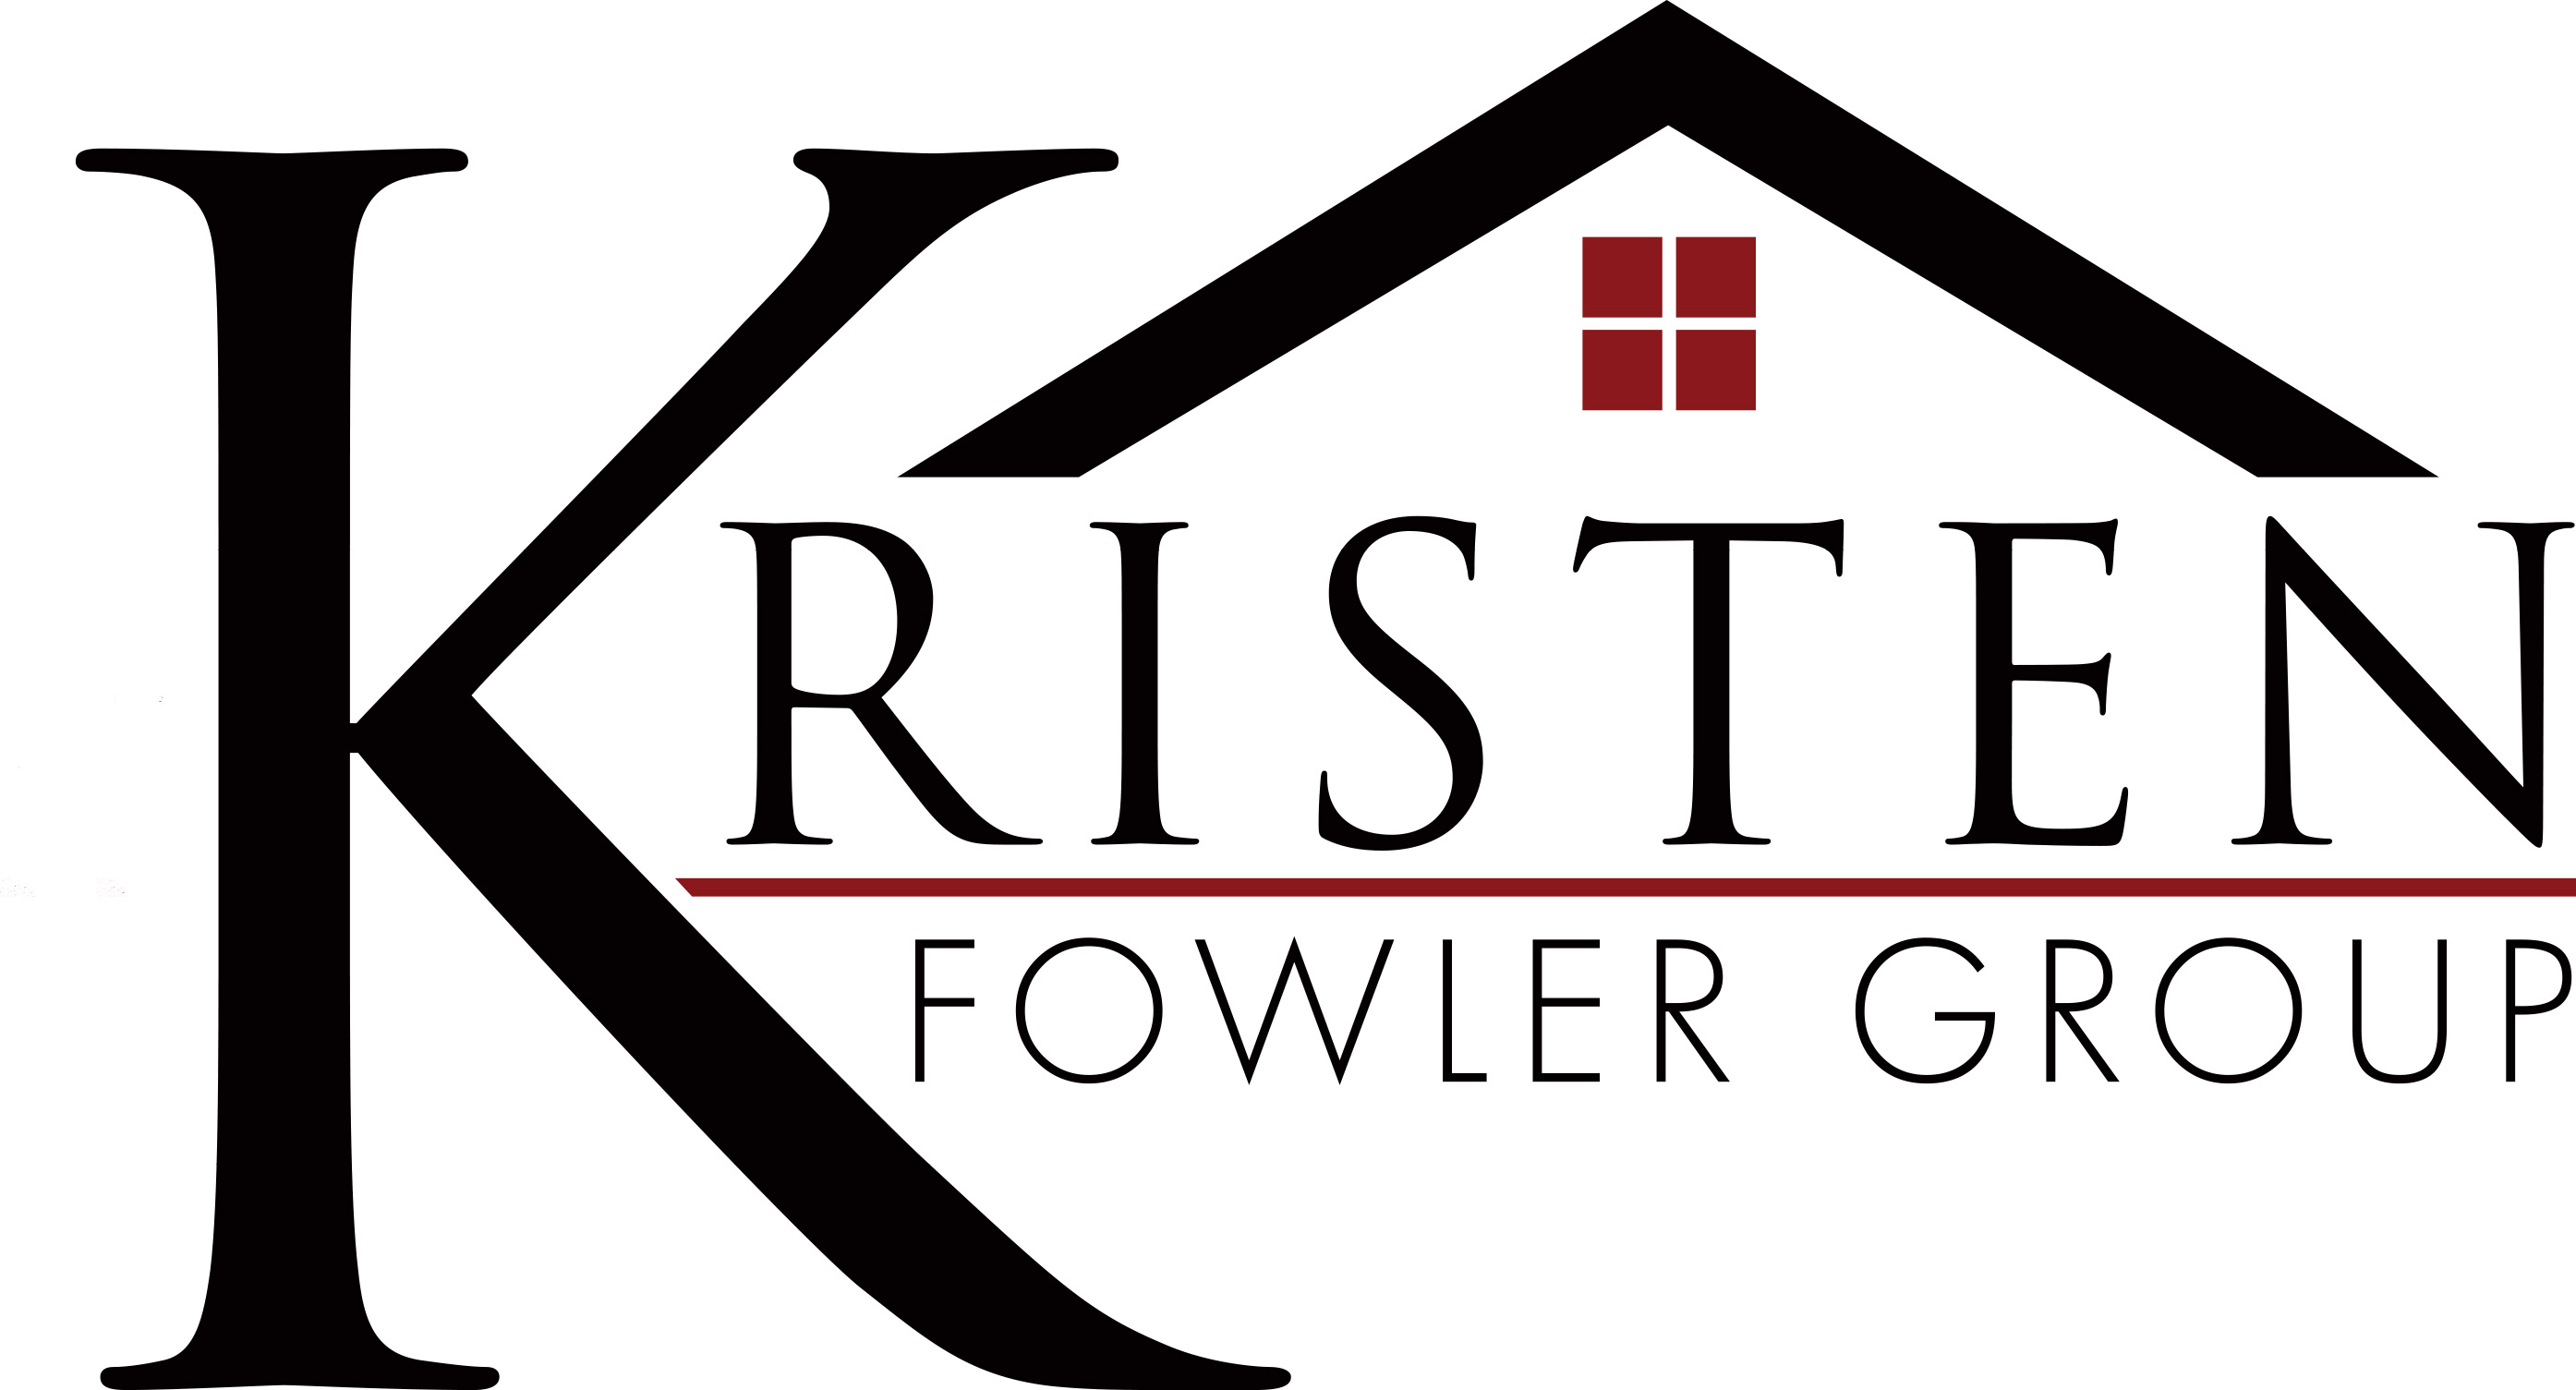 Kristen Fowler Group